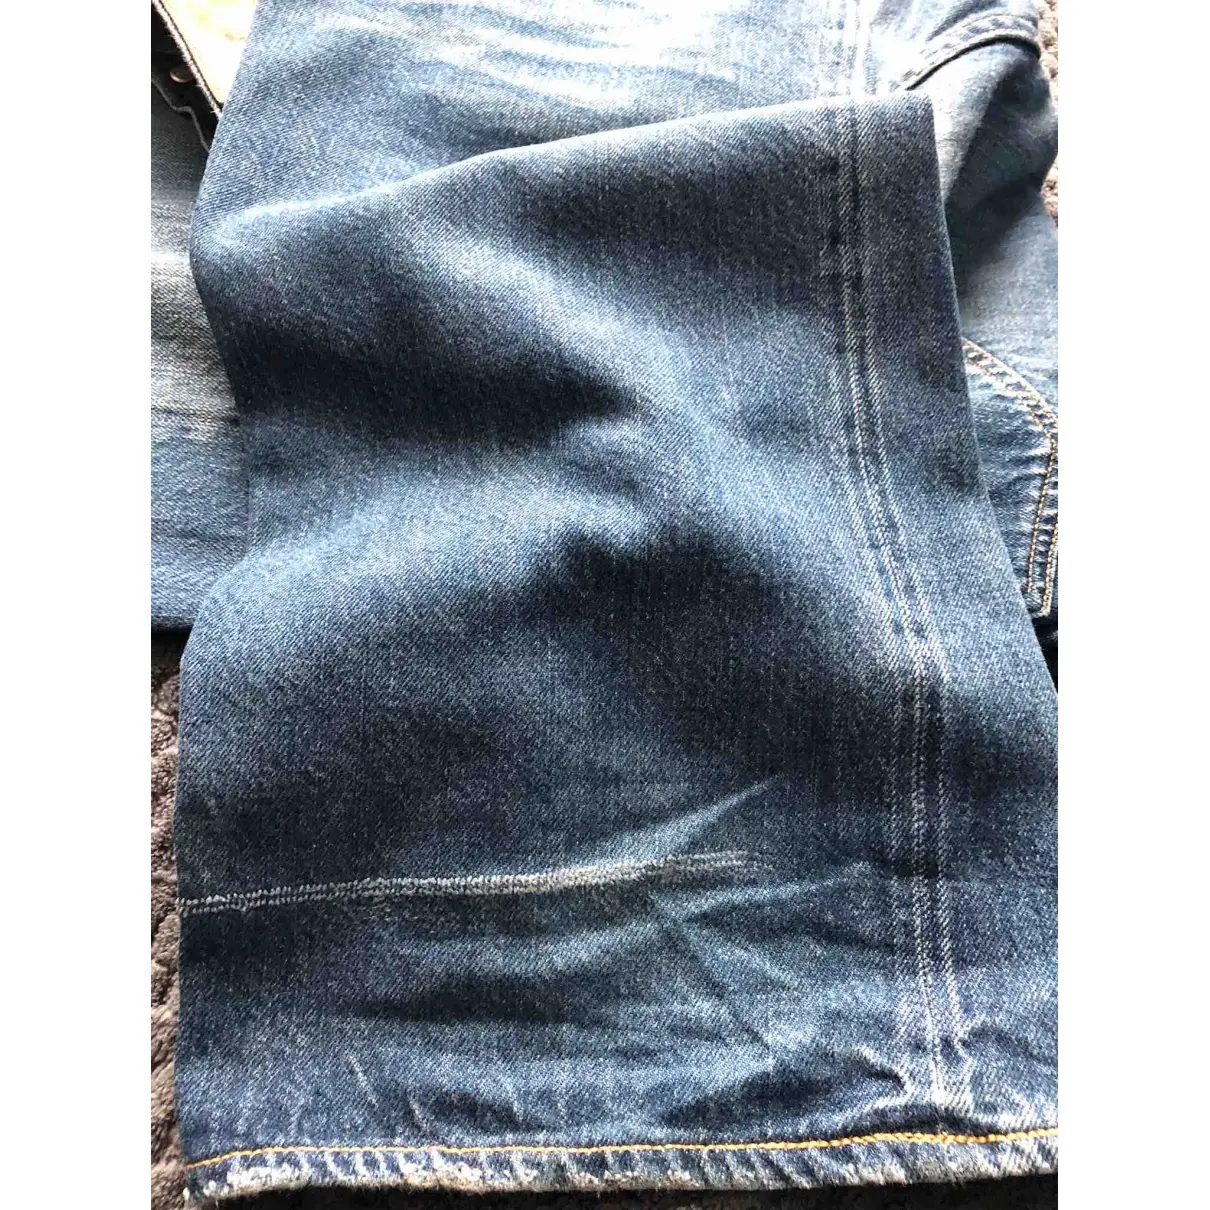 Levi's Vintage Clothing Blue Cotton Jeans for sale - Vintage